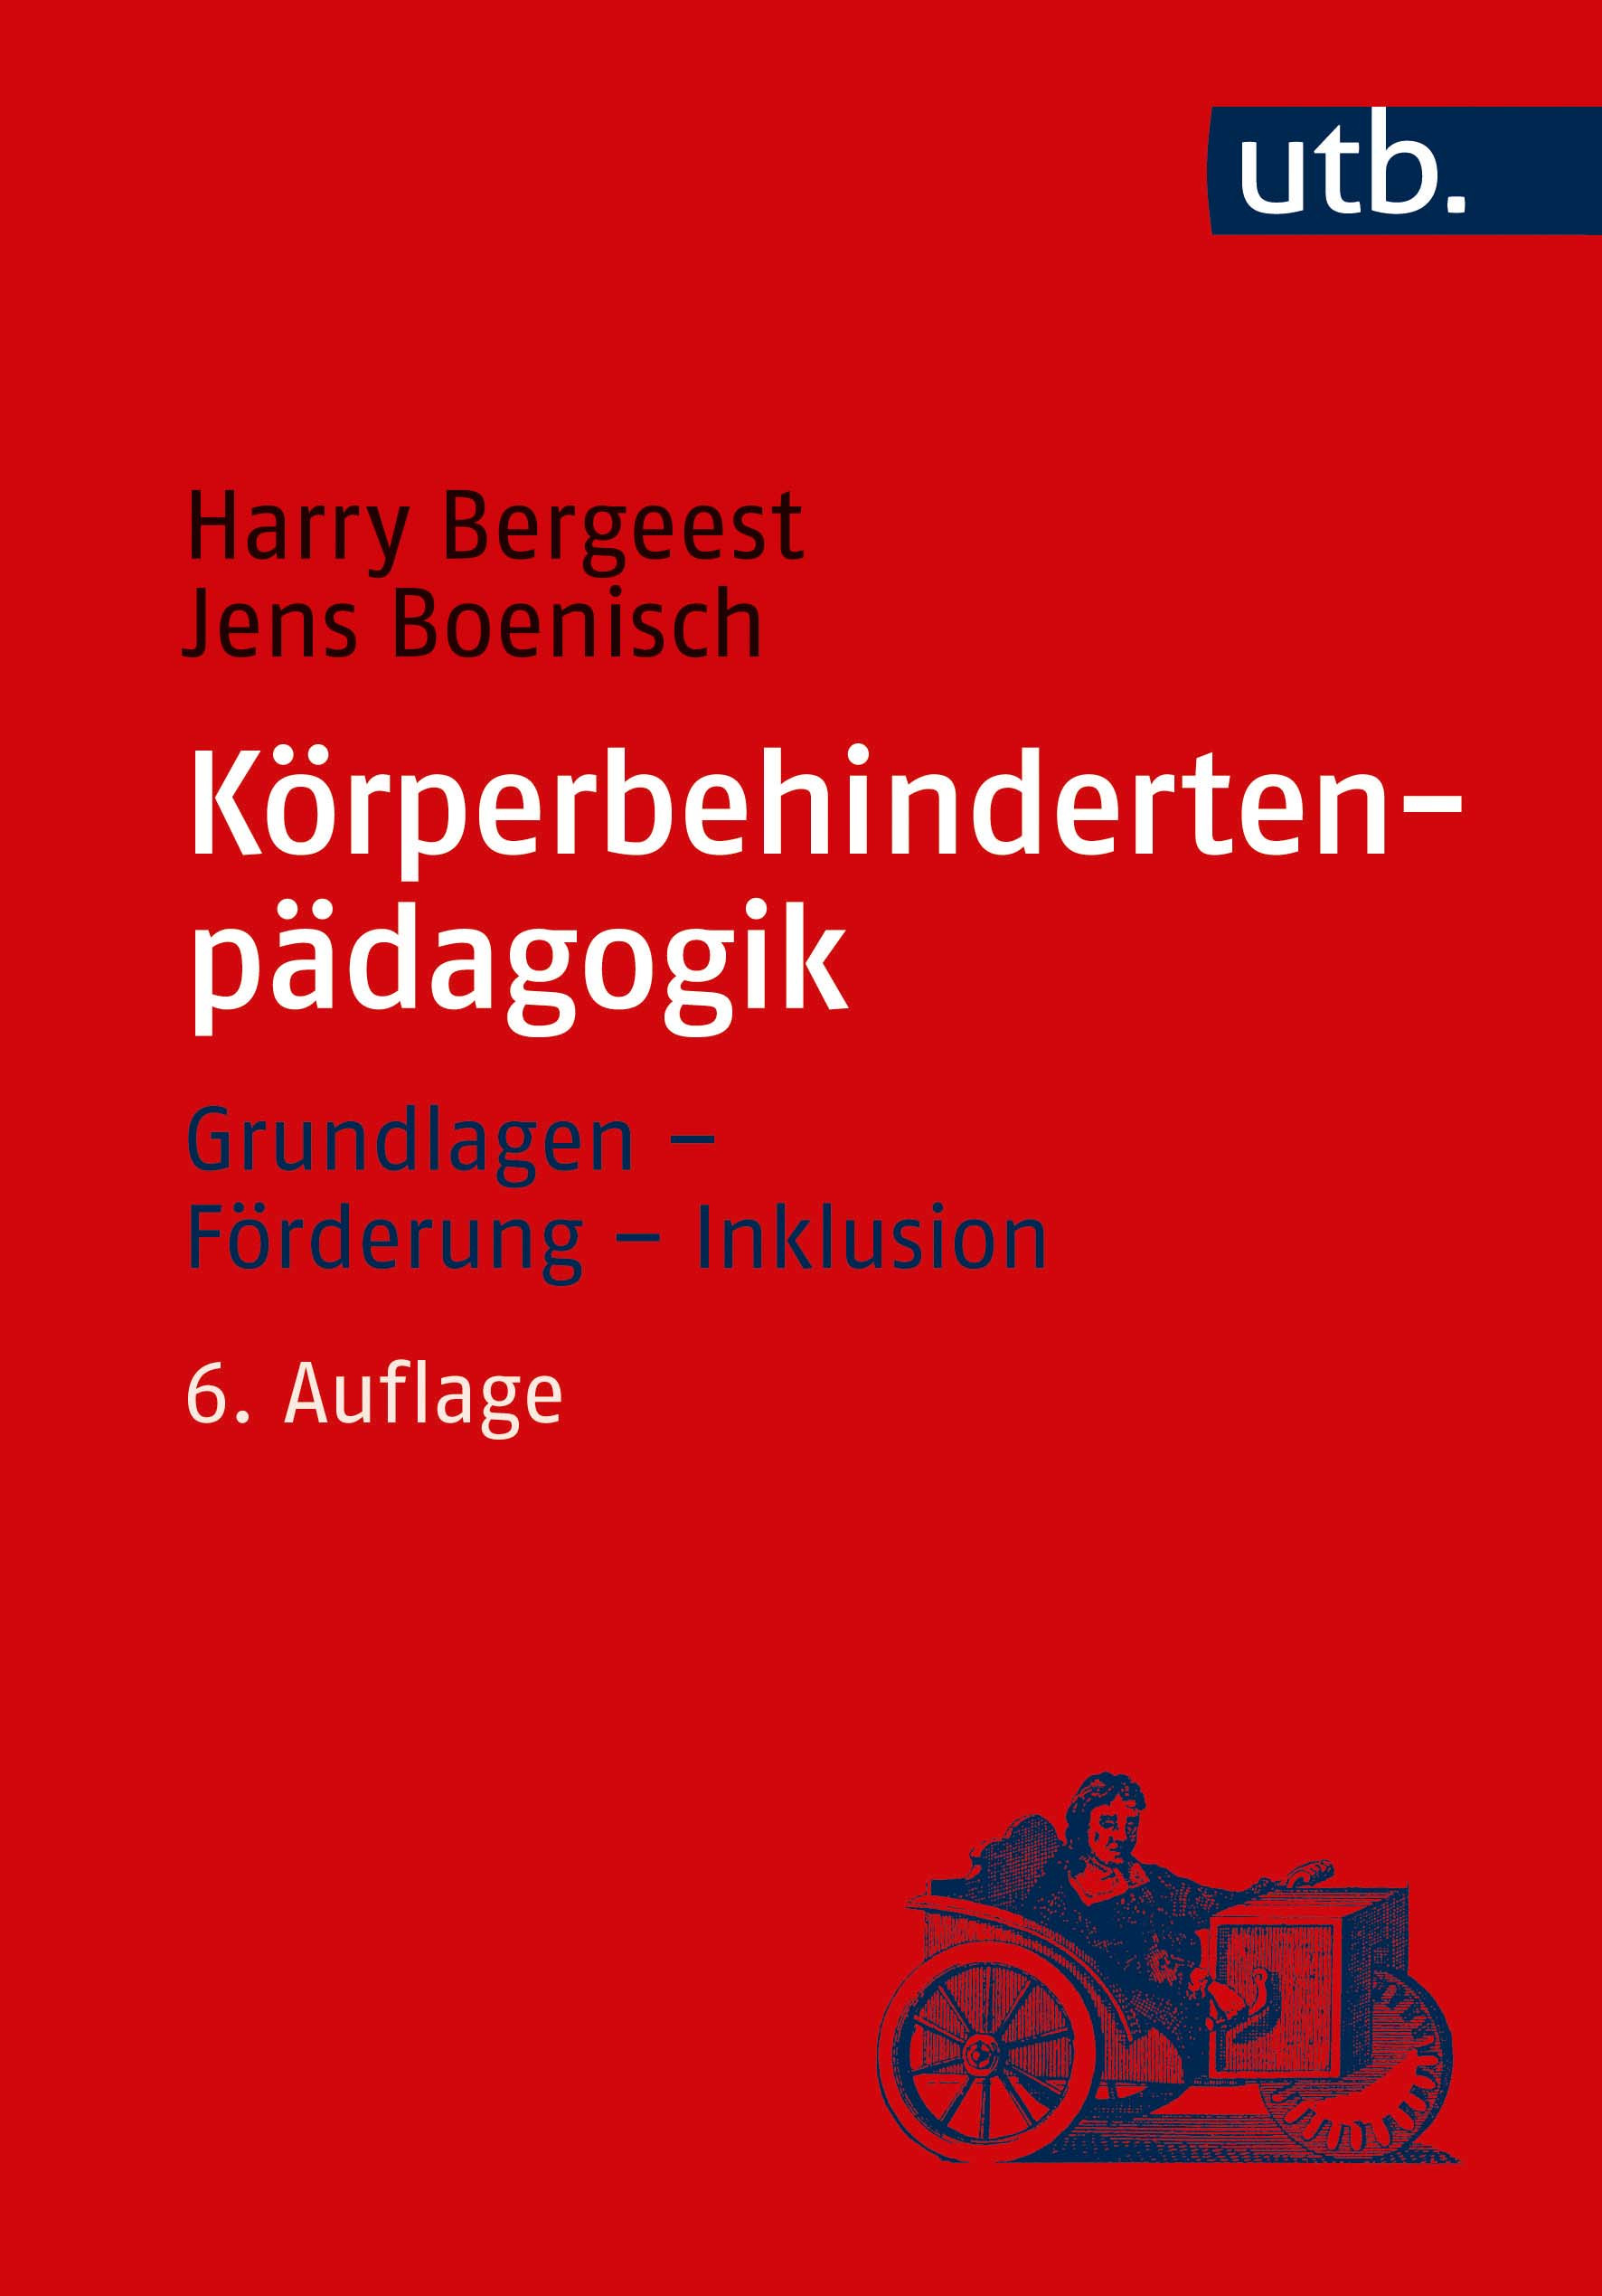 Bergeest, Harry  / Boenisch, Jens : Körperbehindertenpädagogik